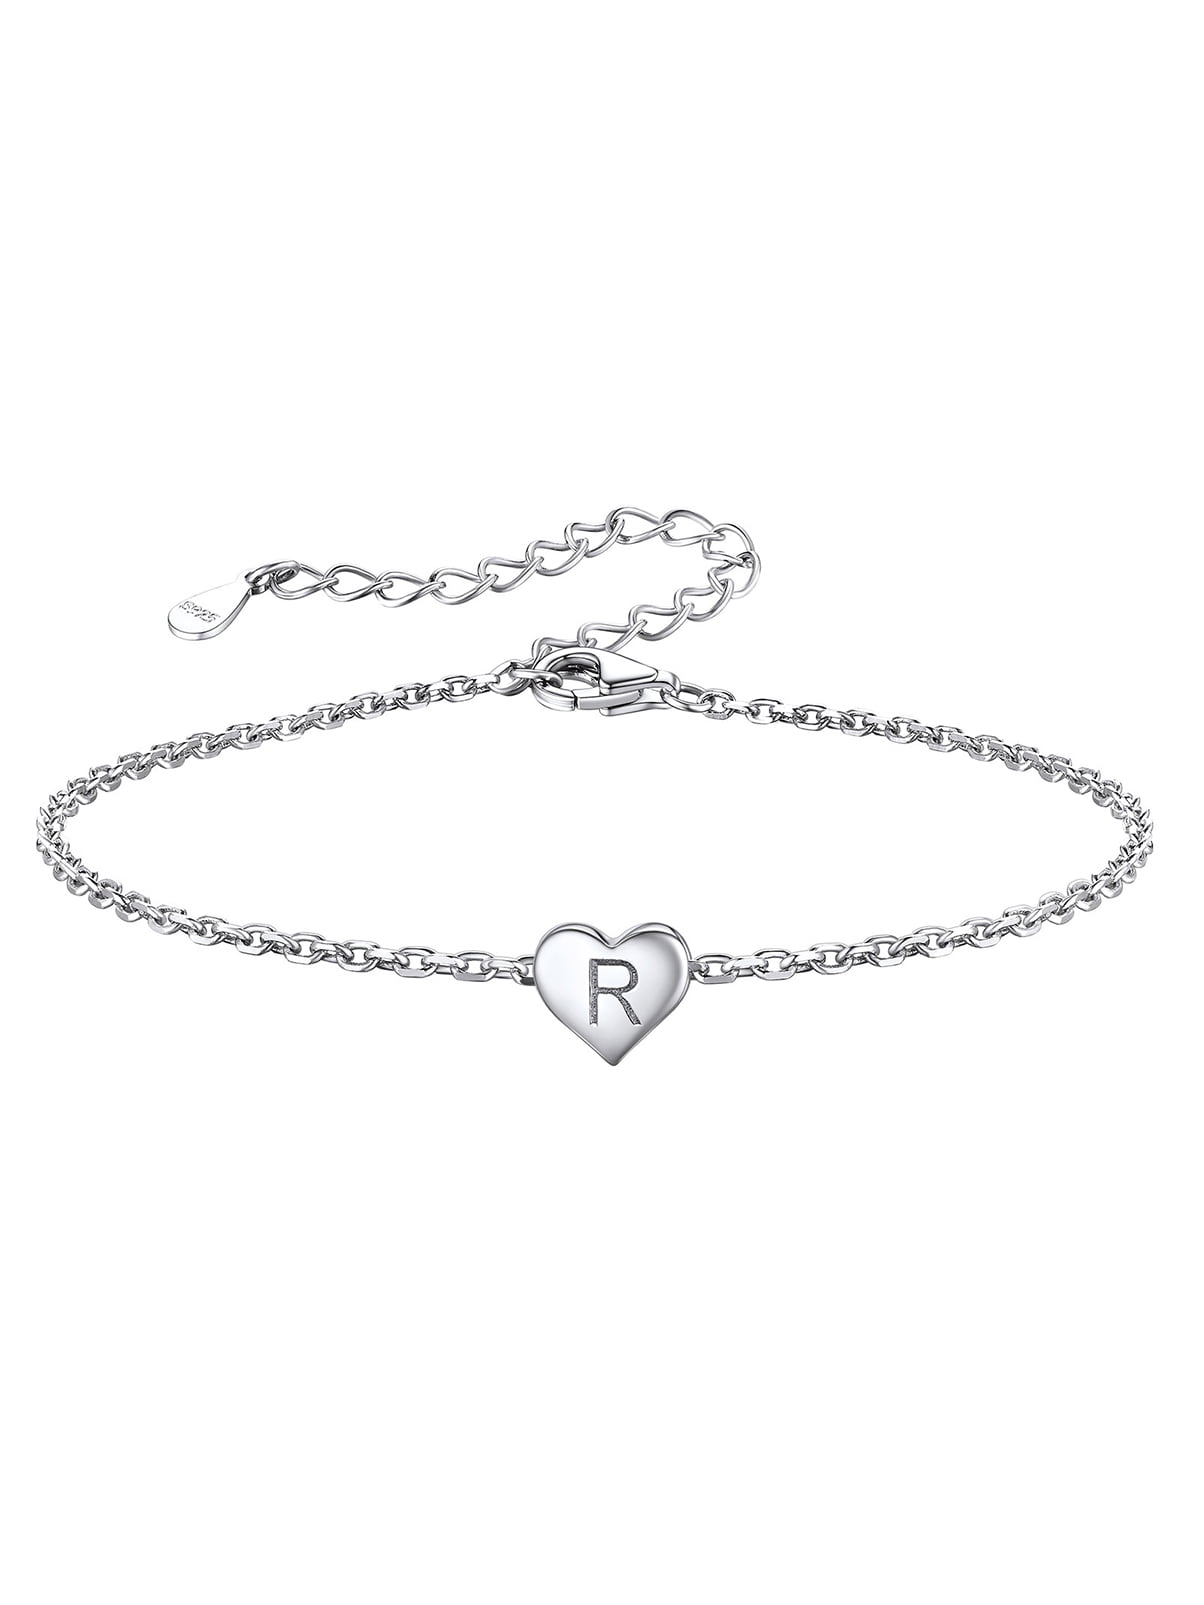 Personalized Silver Bracelets | Silver Bracelets